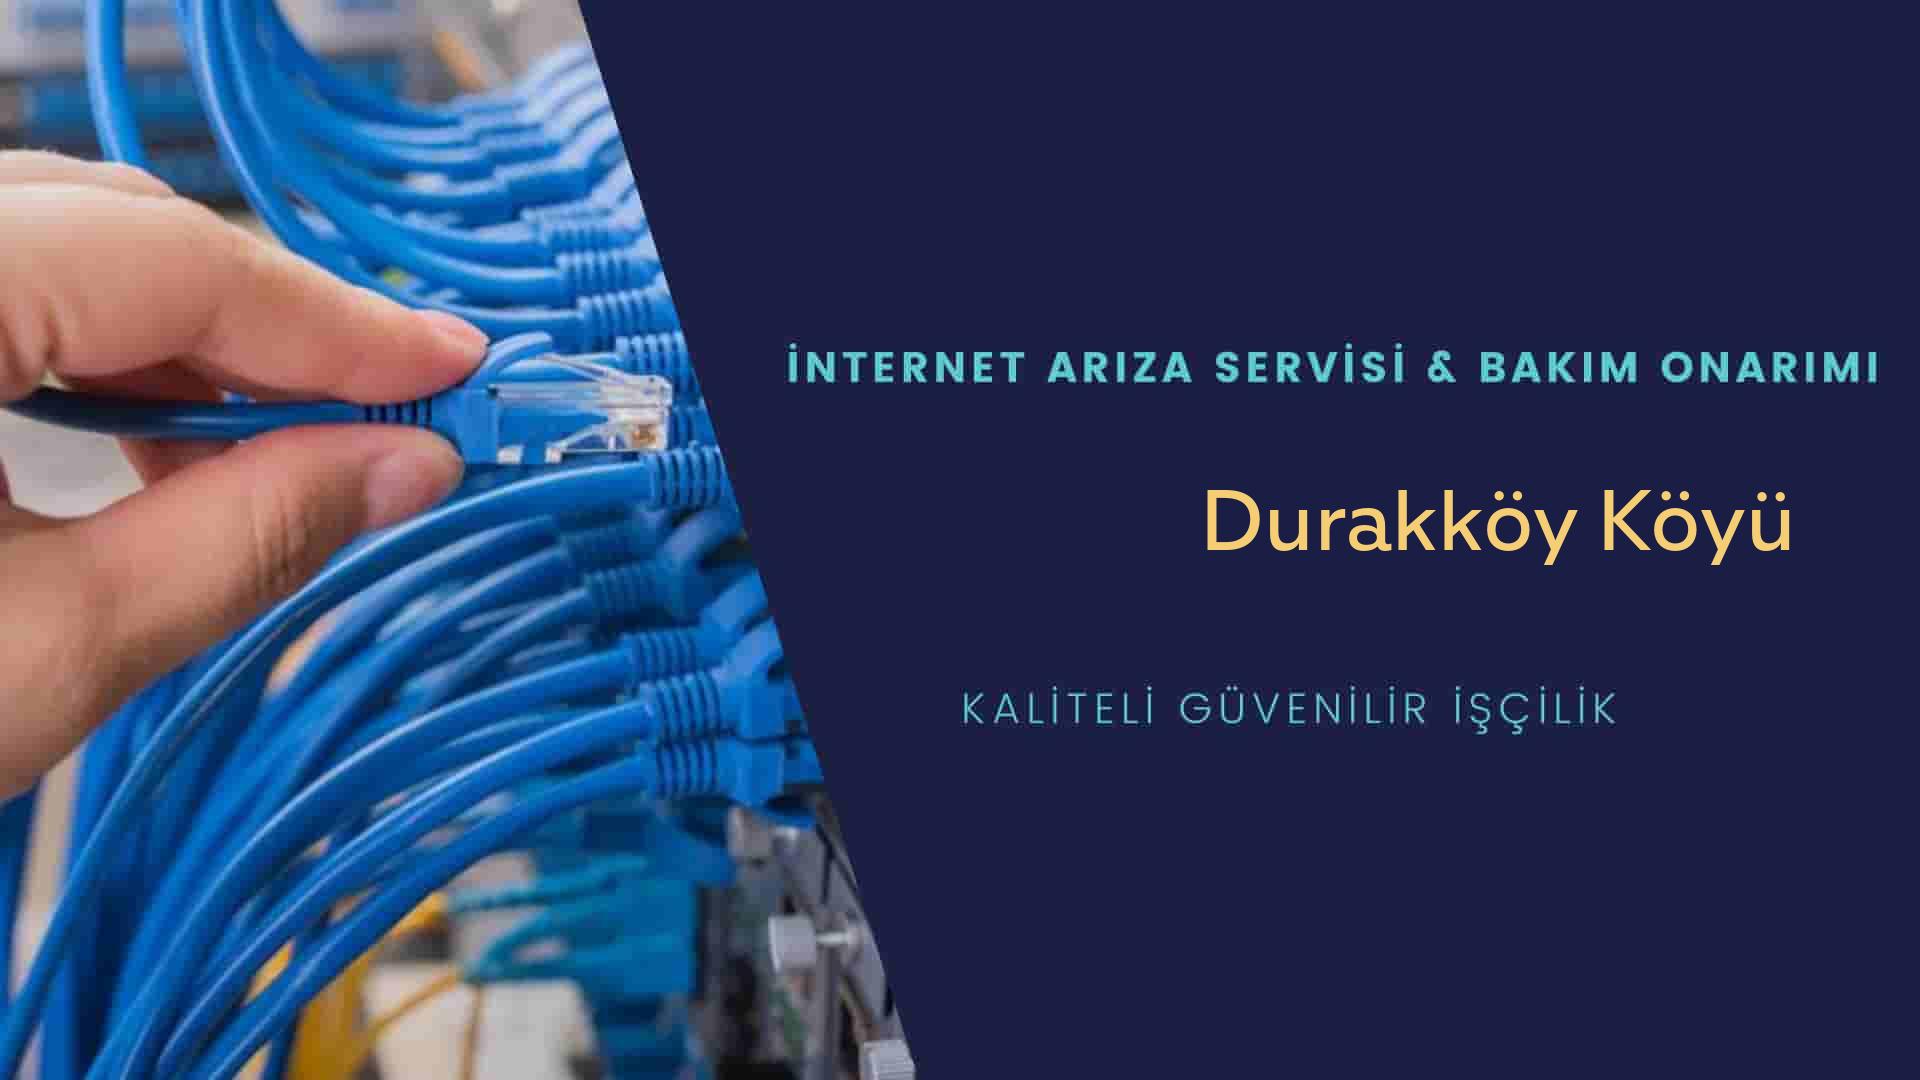 Durakköy Köyü internet kablosu çekimi yapan yerler veya elektrikçiler mi? arıyorsunuz doğru yerdesiniz o zaman sizlere 7/24 yardımcı olacak profesyonel ustalarımız bir telefon kadar yakındır size.